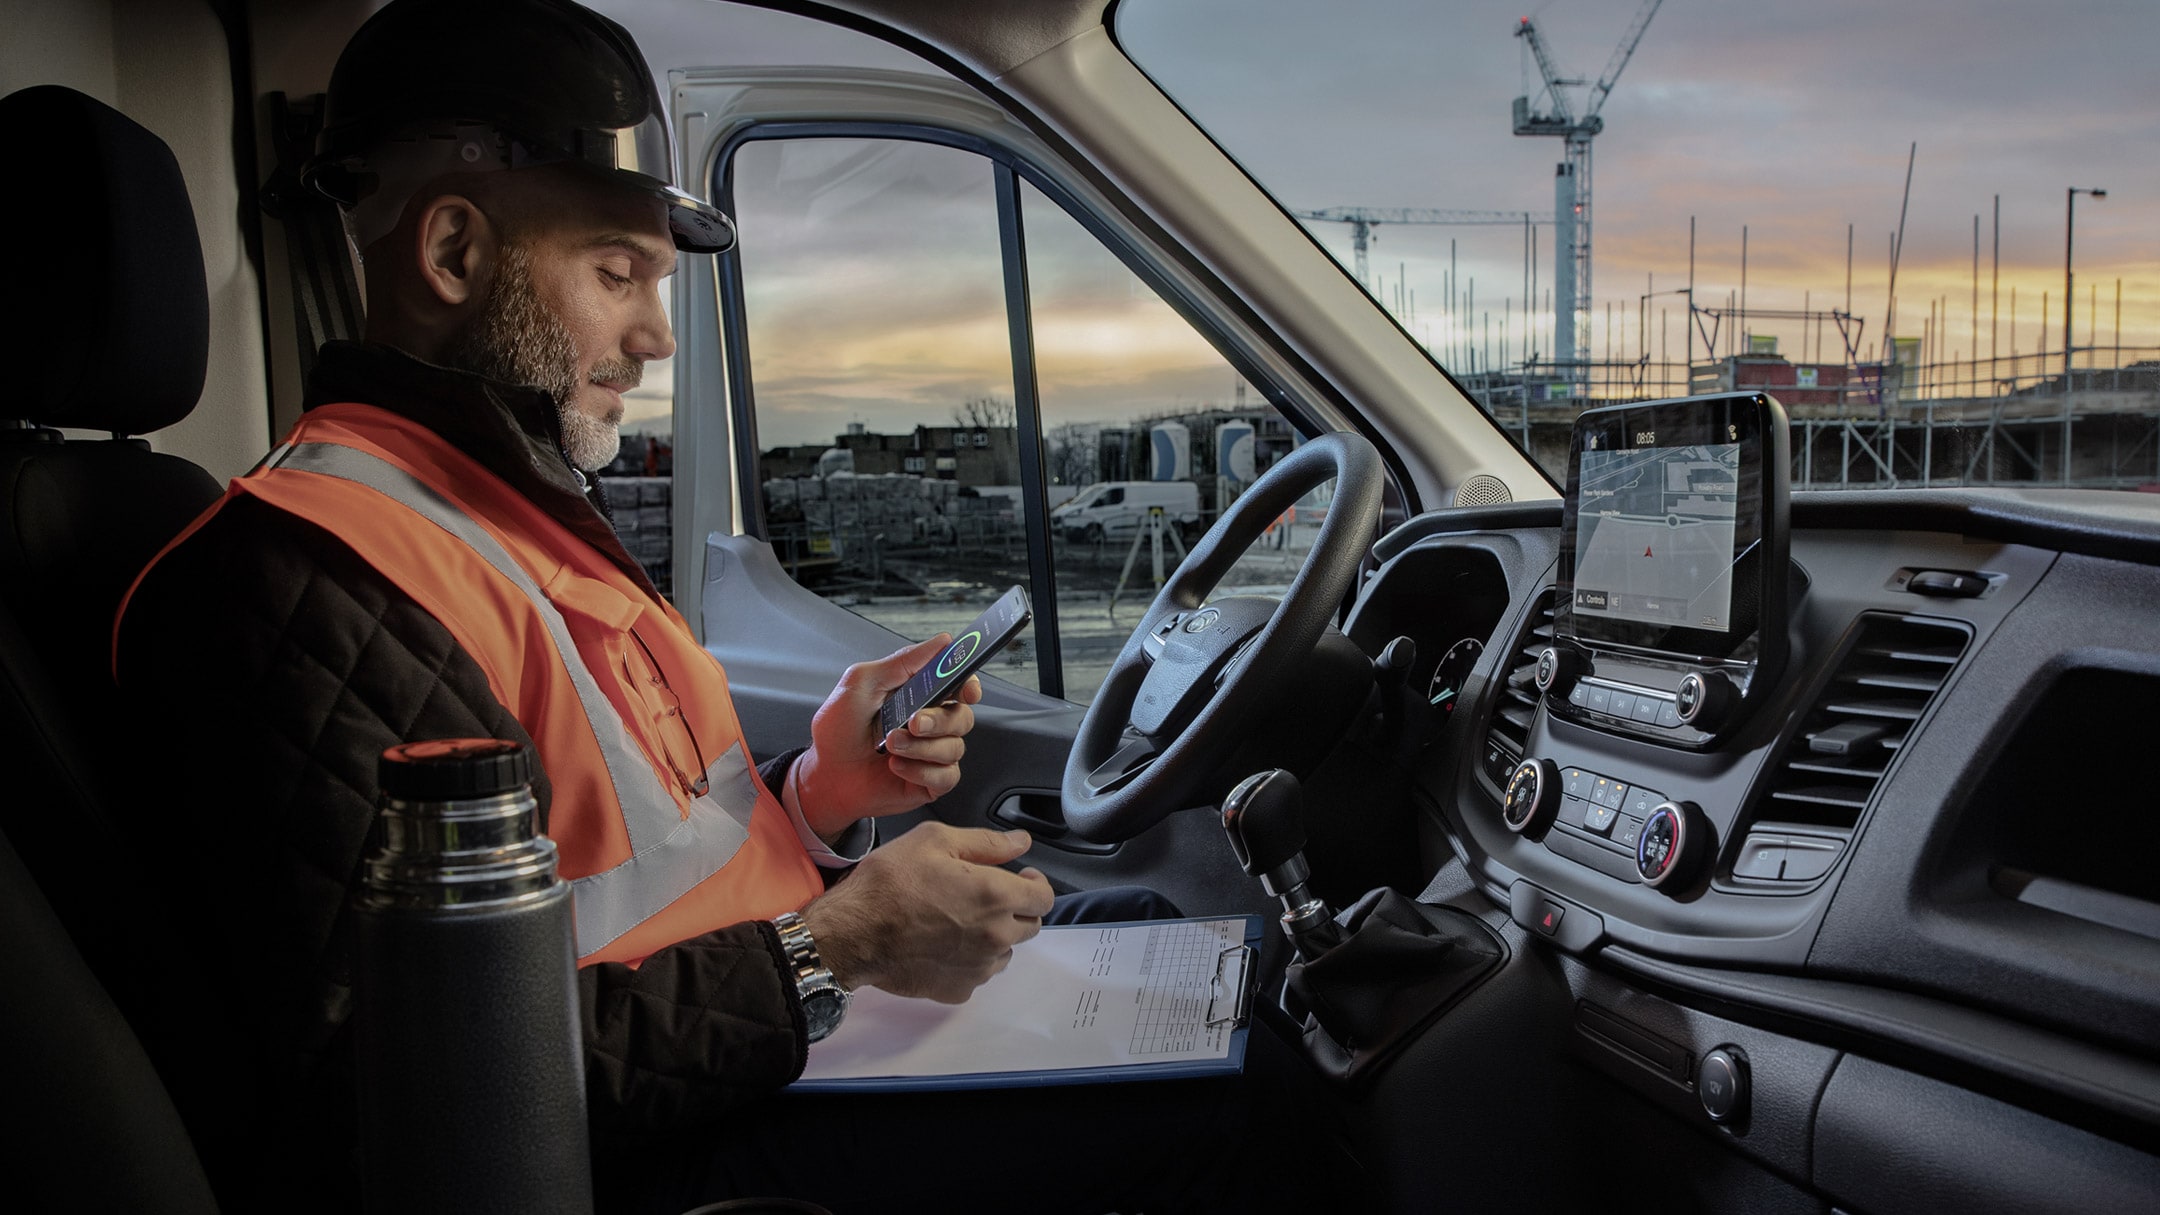 Ouvrier portant un casque de chantier assis derrière le volant d’un véhicule et regardant un téléphone portable